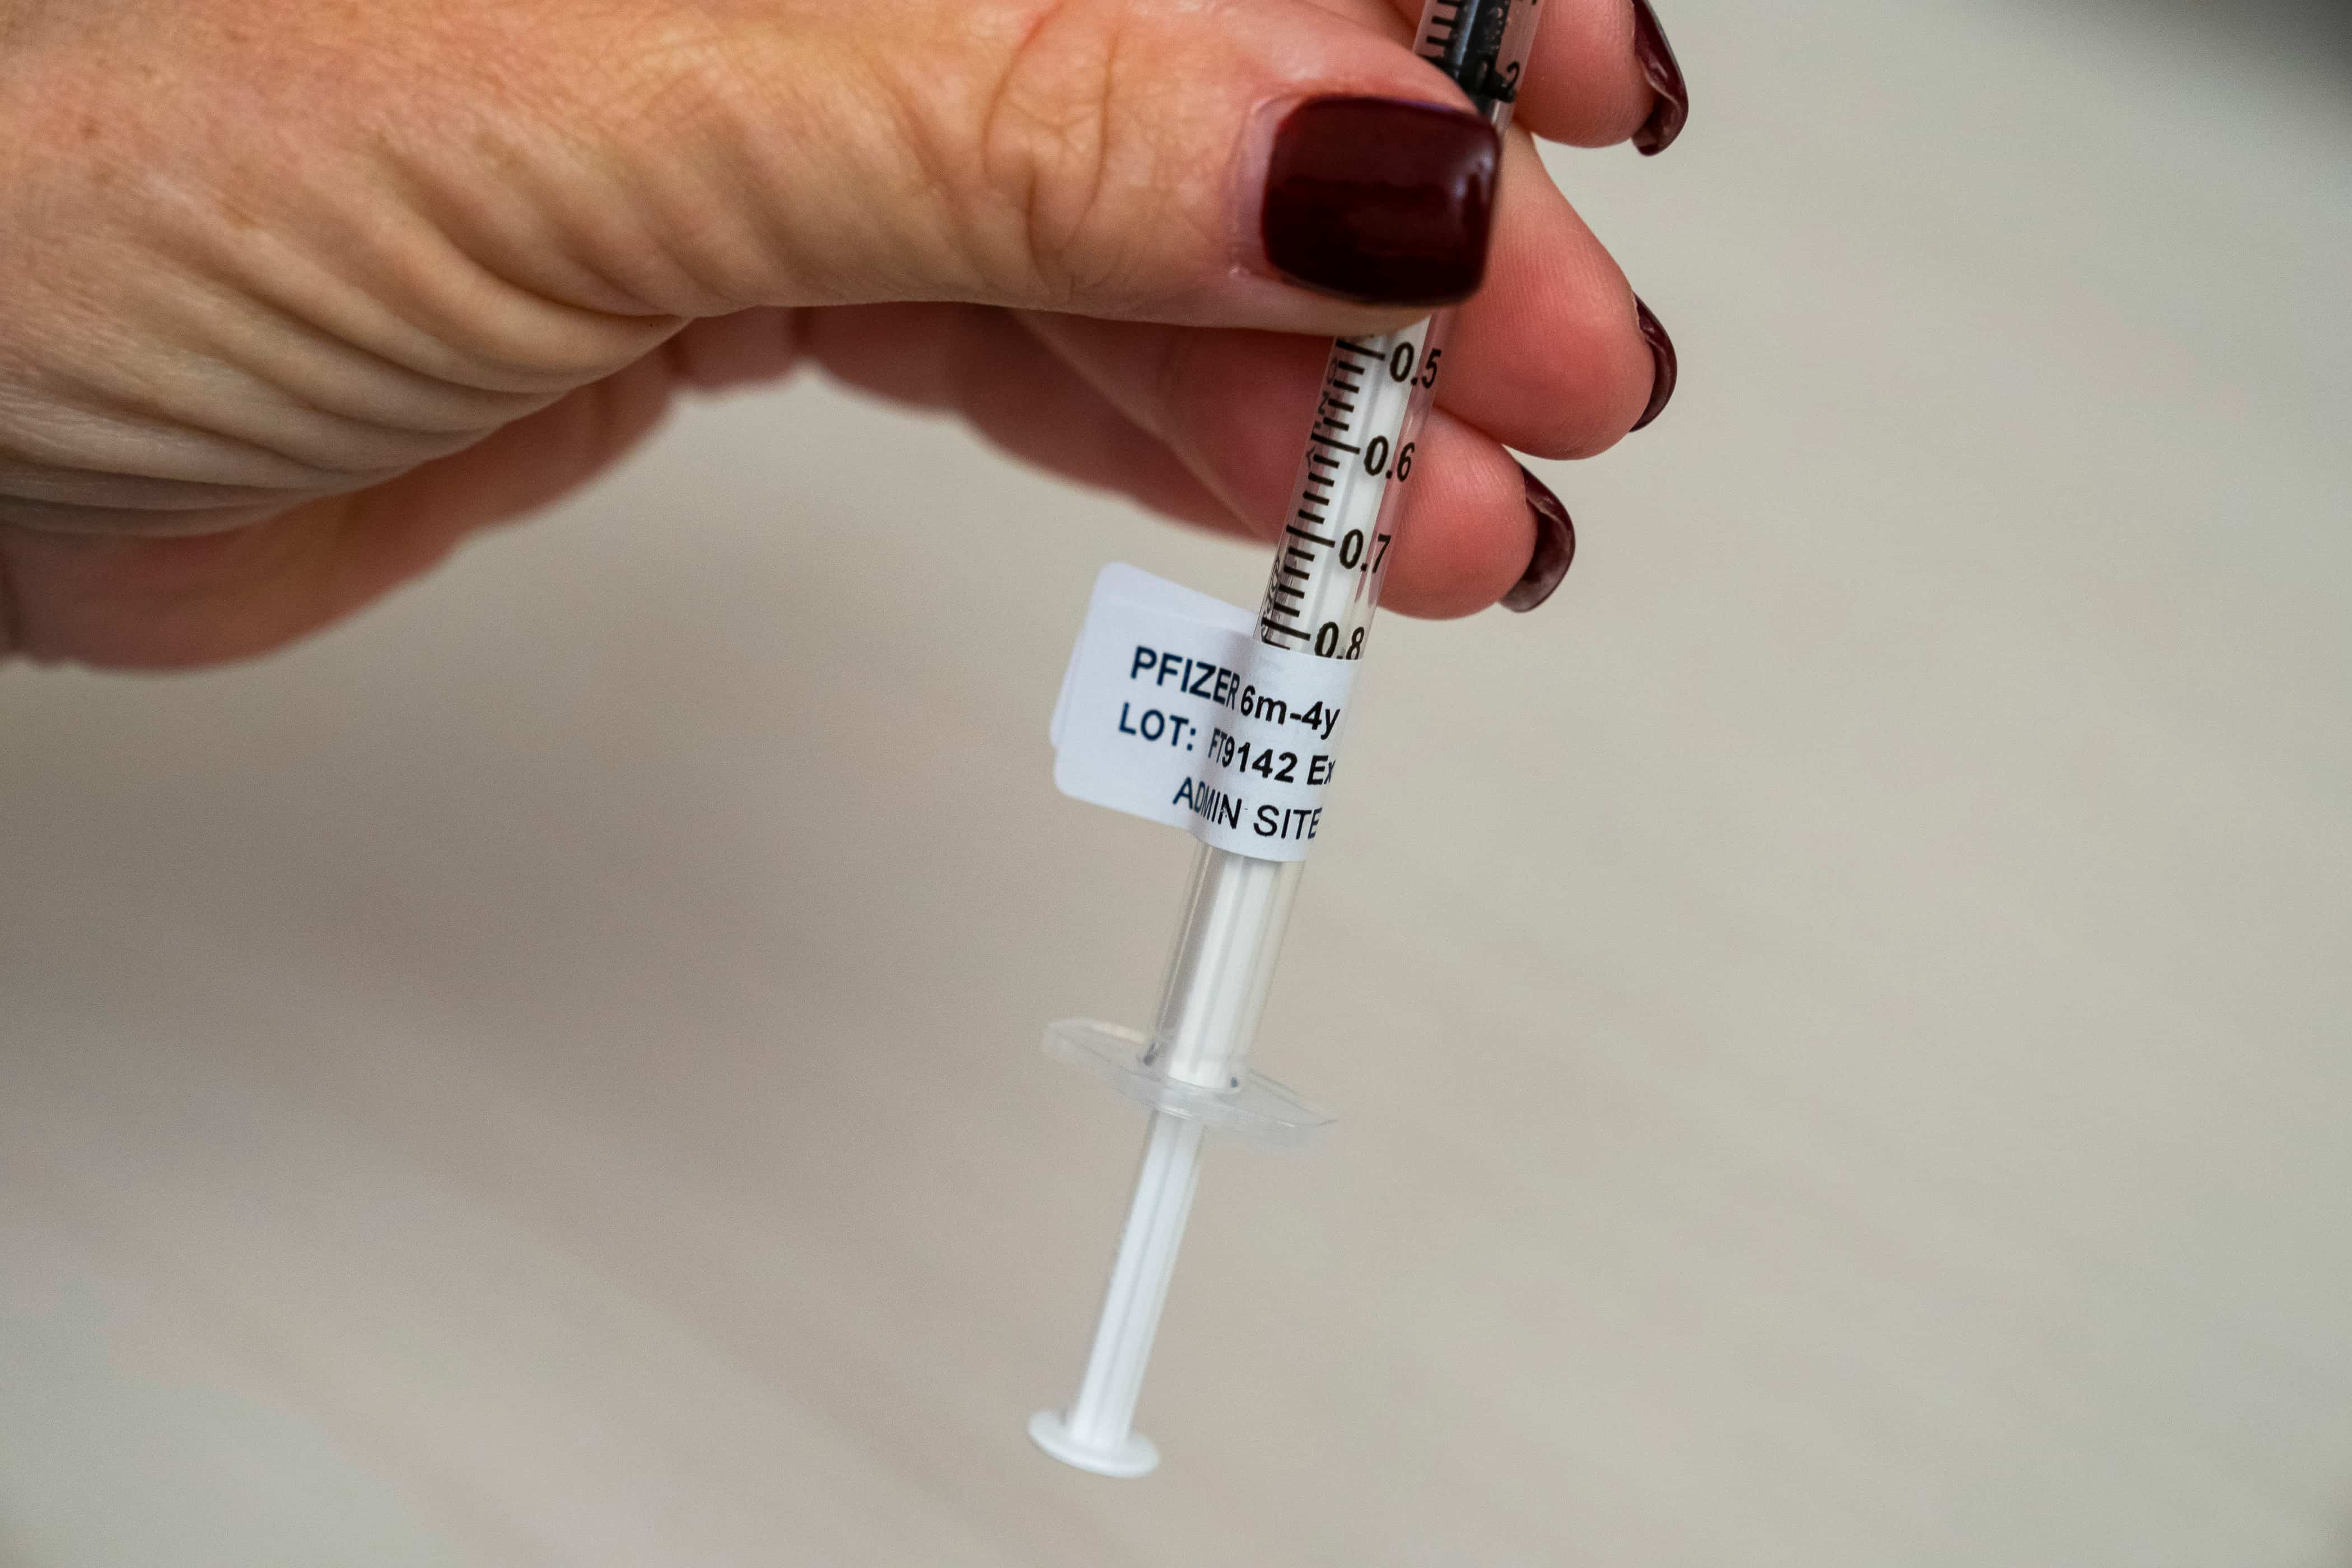 UK: Pfizer Accused of Promoting 'Unlicensed' COVID Vaccine